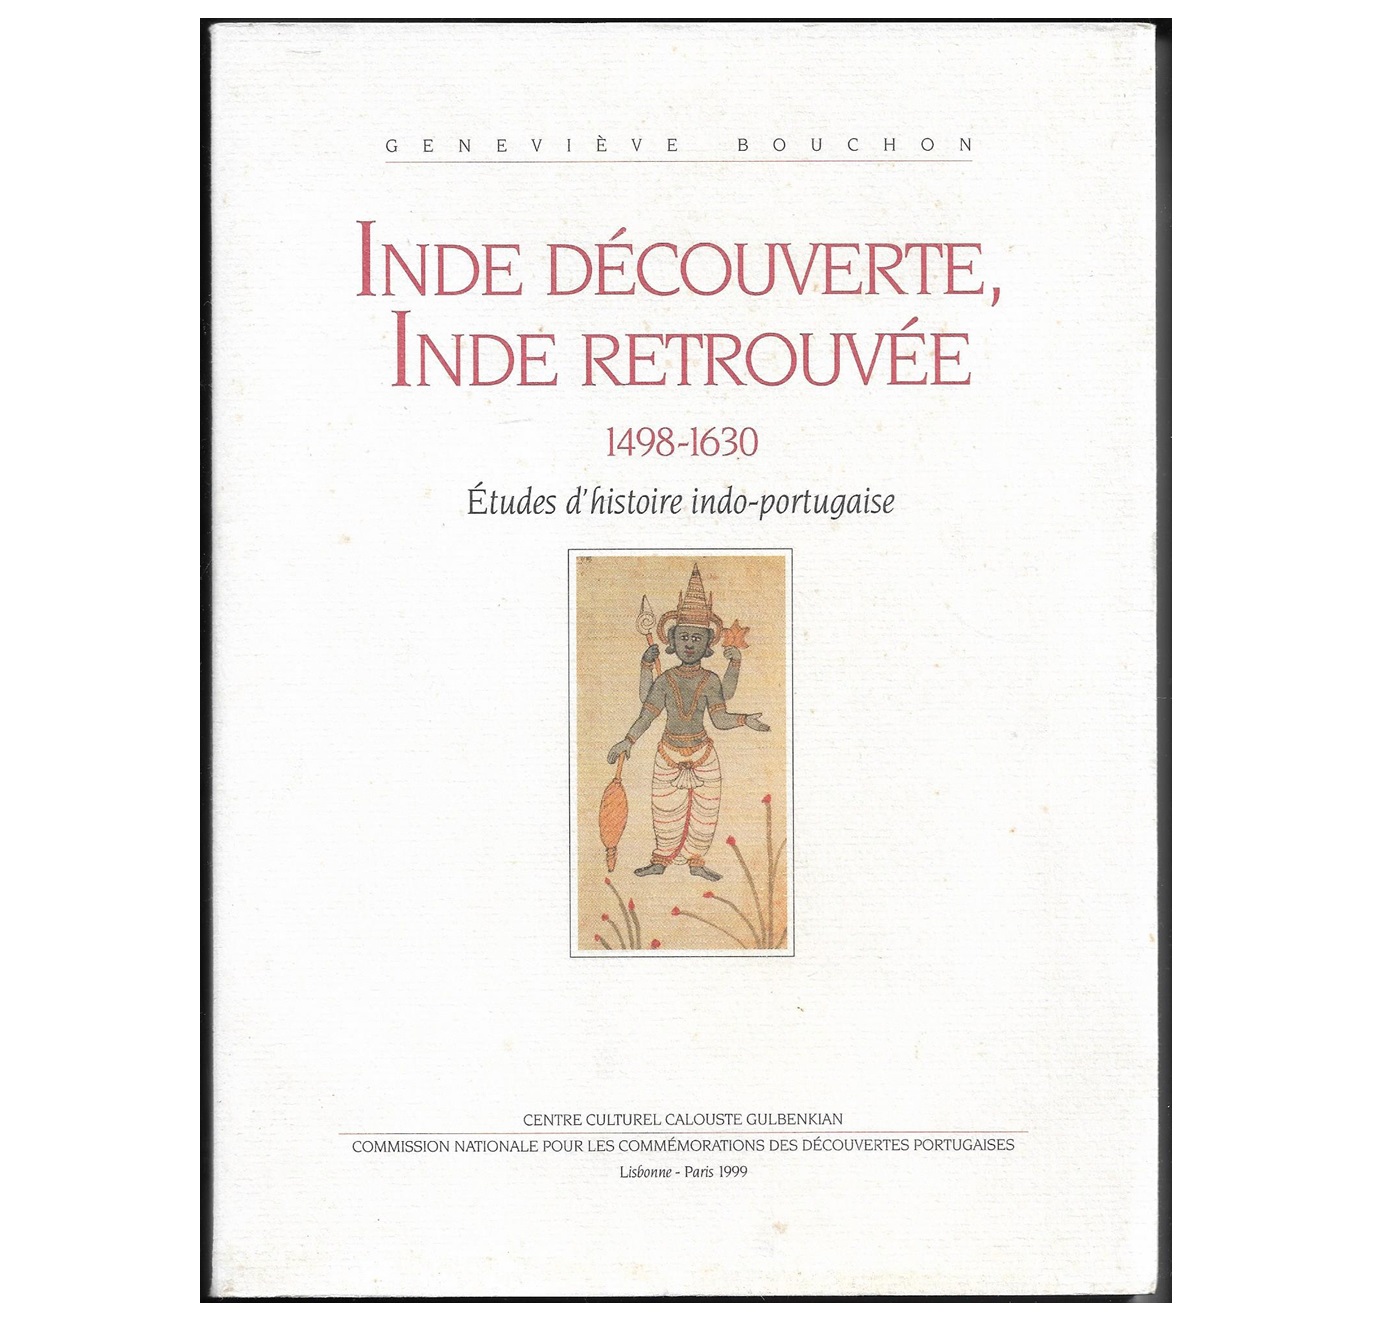 INDE DÉCOUVERTE, INDE RETROUVÉE, 1498-1630